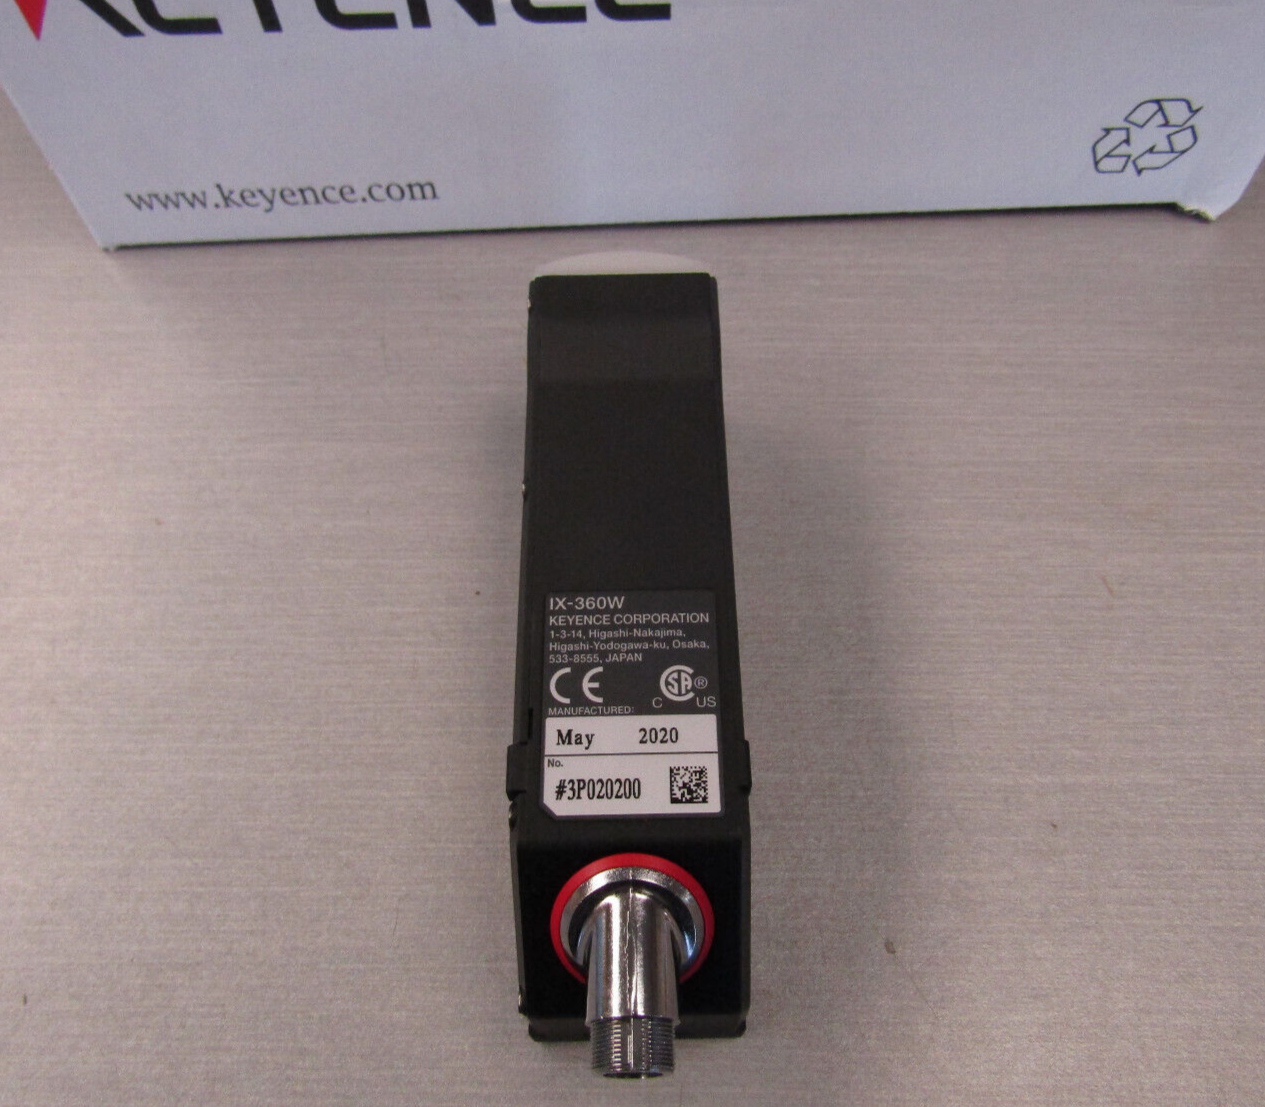 Keyence IX-360W Image Based Laser Sensor Head – Autovation Surplus